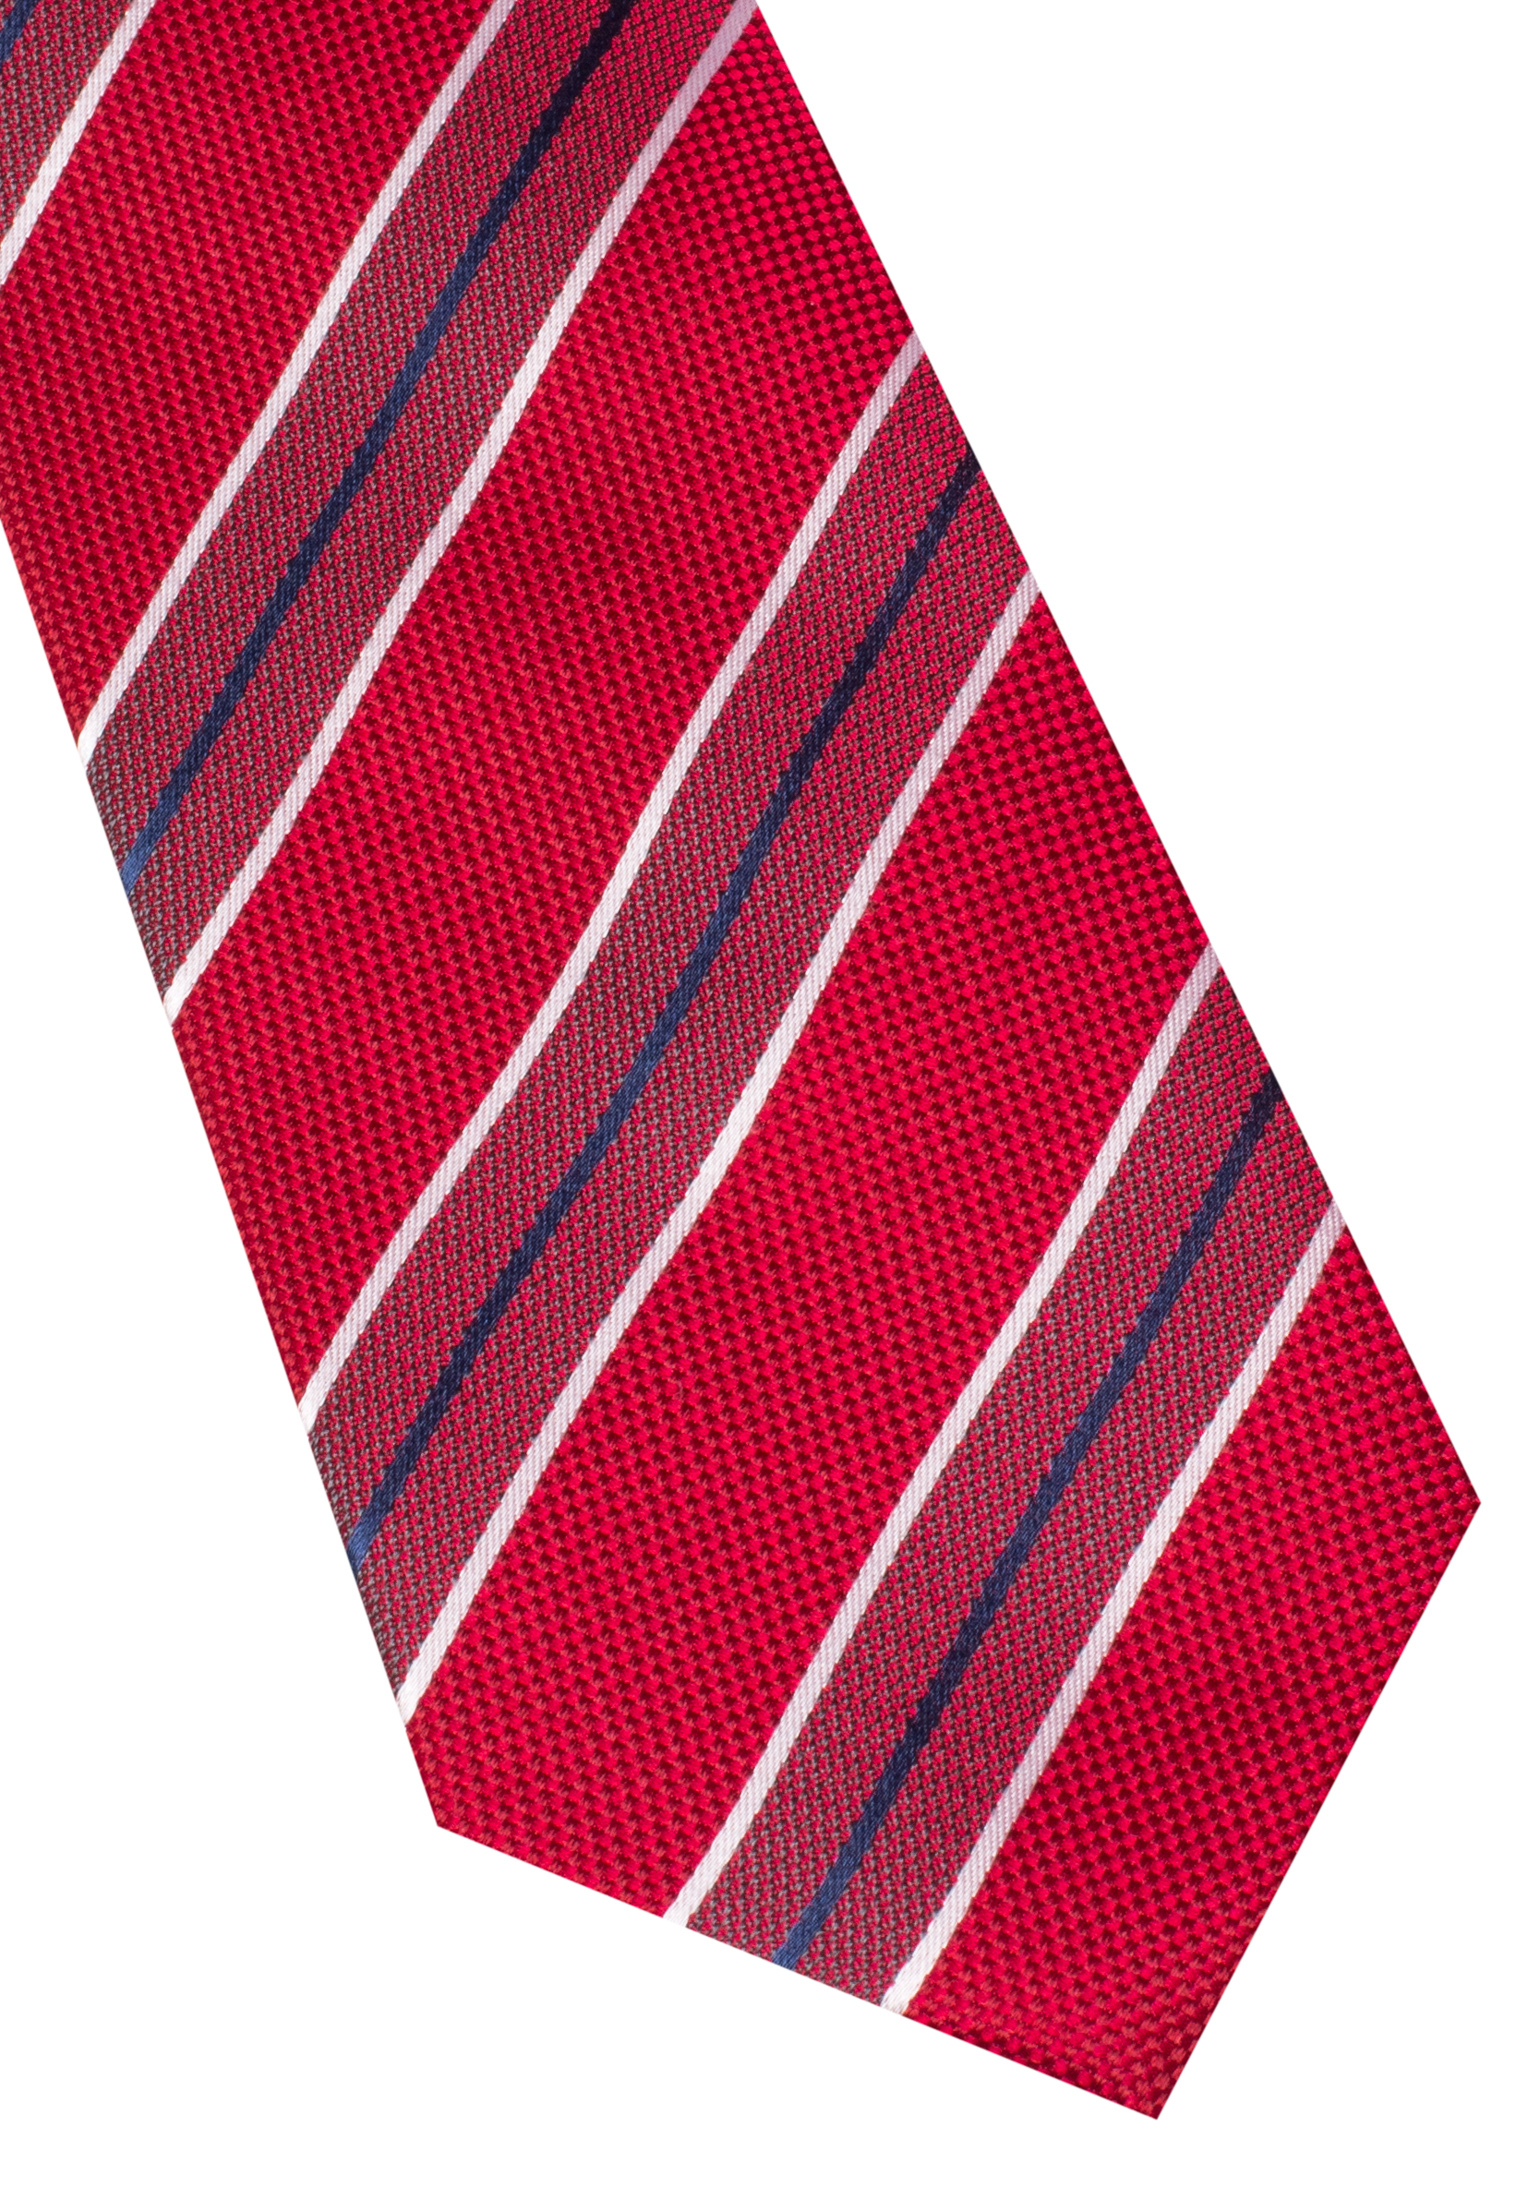 Krawatte in rot gestreift